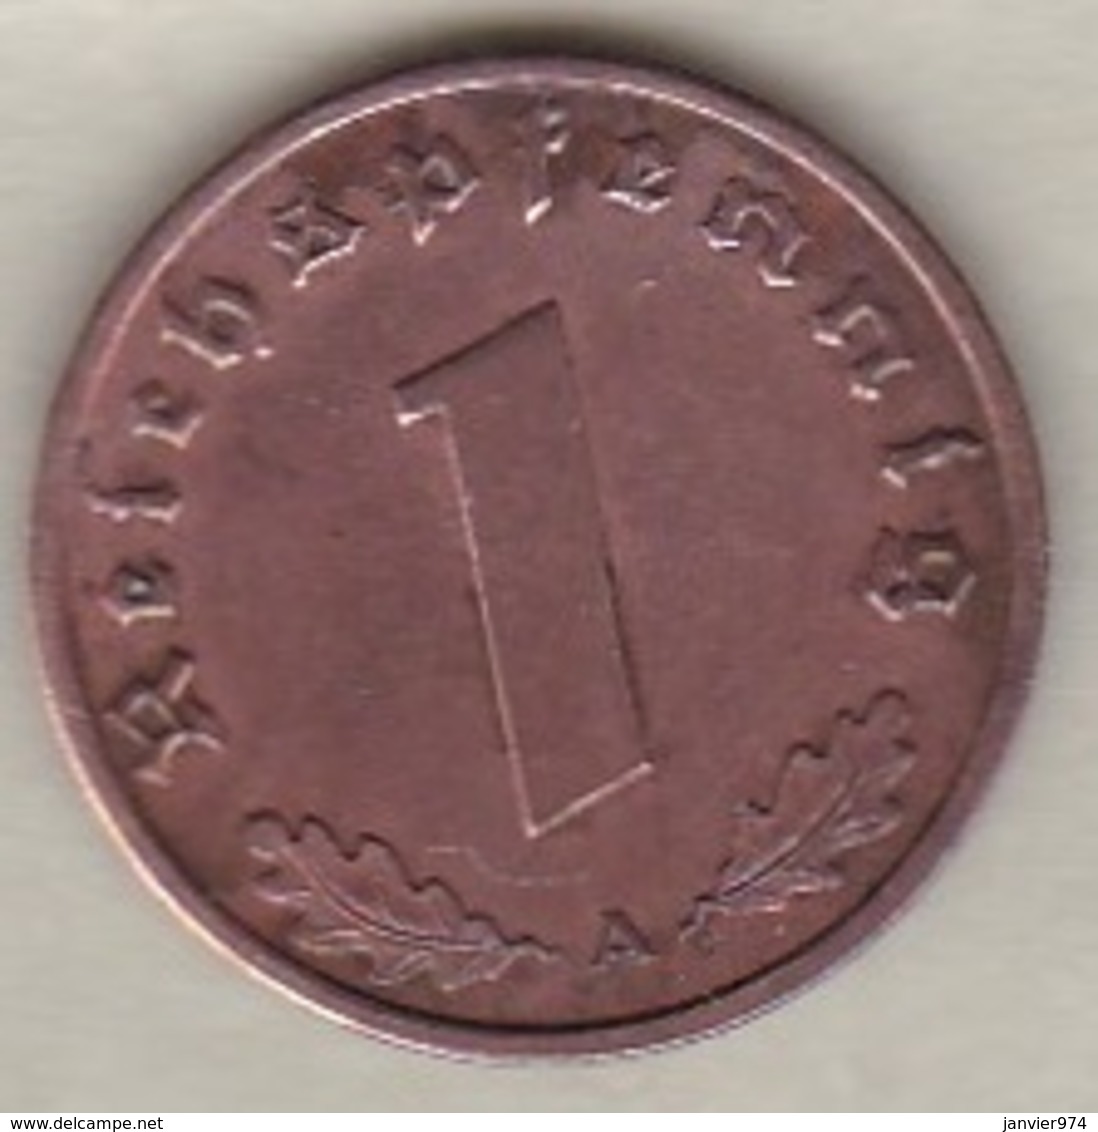 1 Reichspfennig 1940 A (BERLIN) . Bronze - 1 Reichspfennig